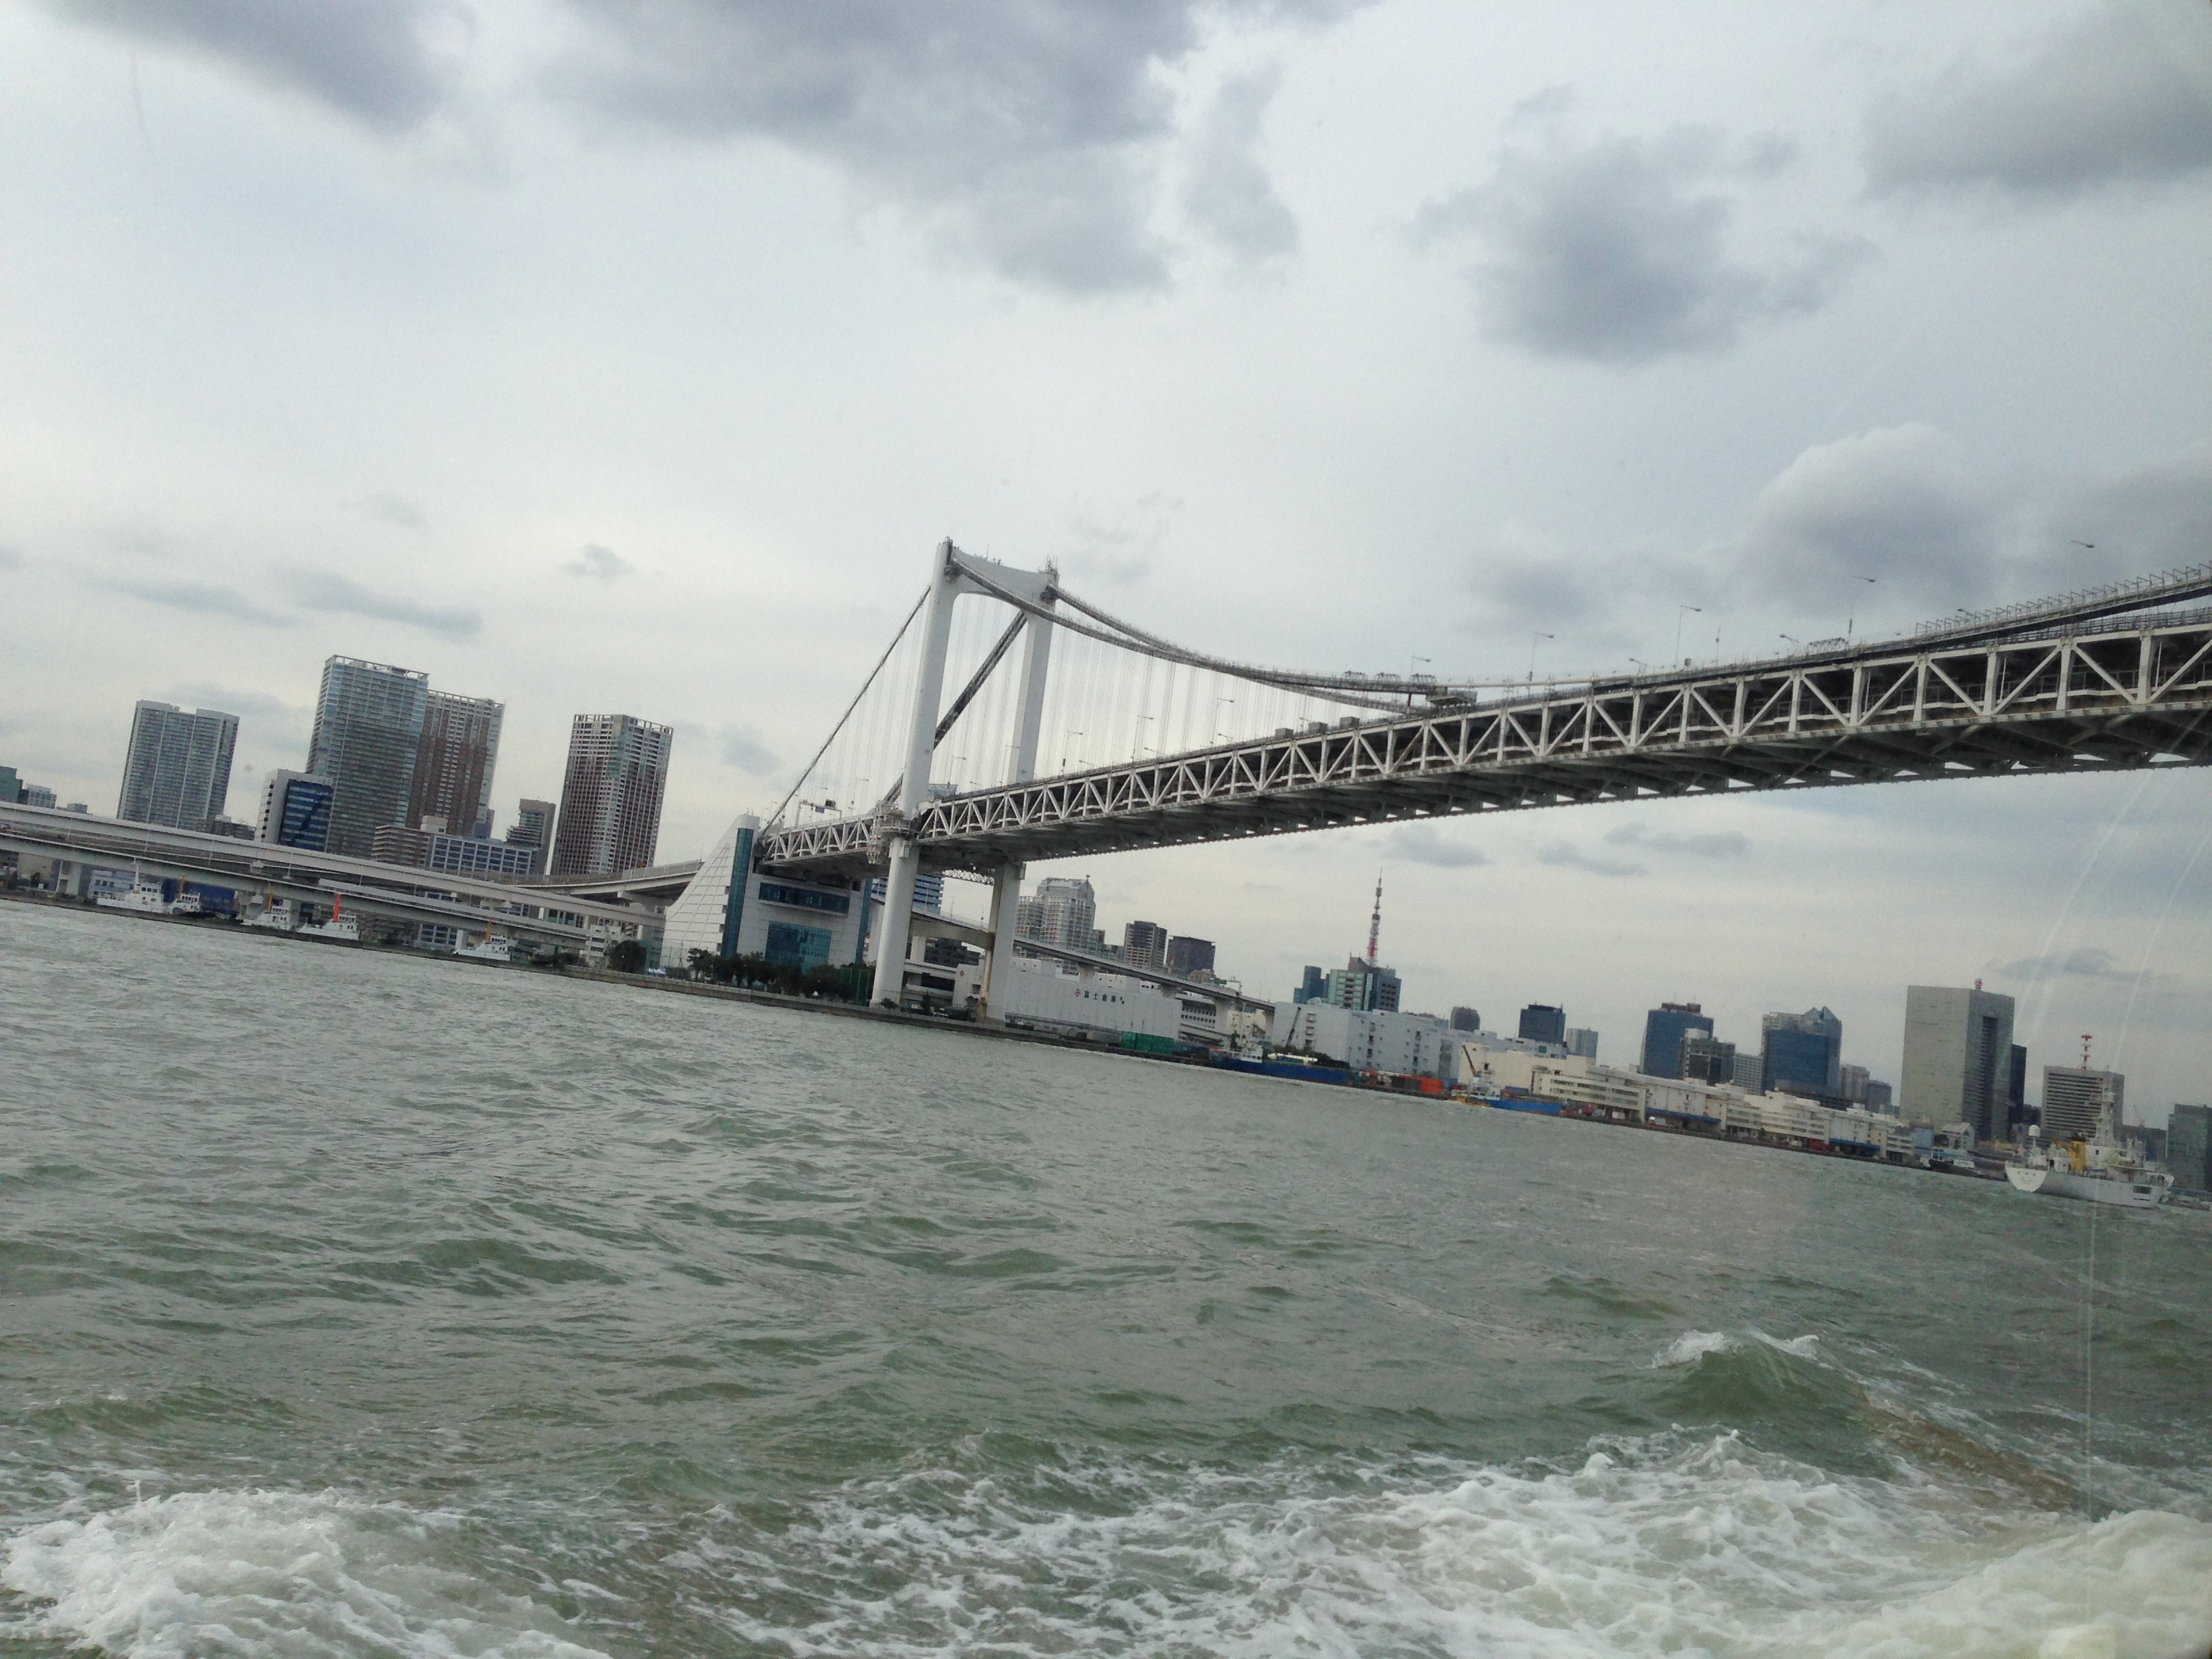 为了高达,在东京五天去了台场2次,一次海鸥号从桥上过,一次乘船